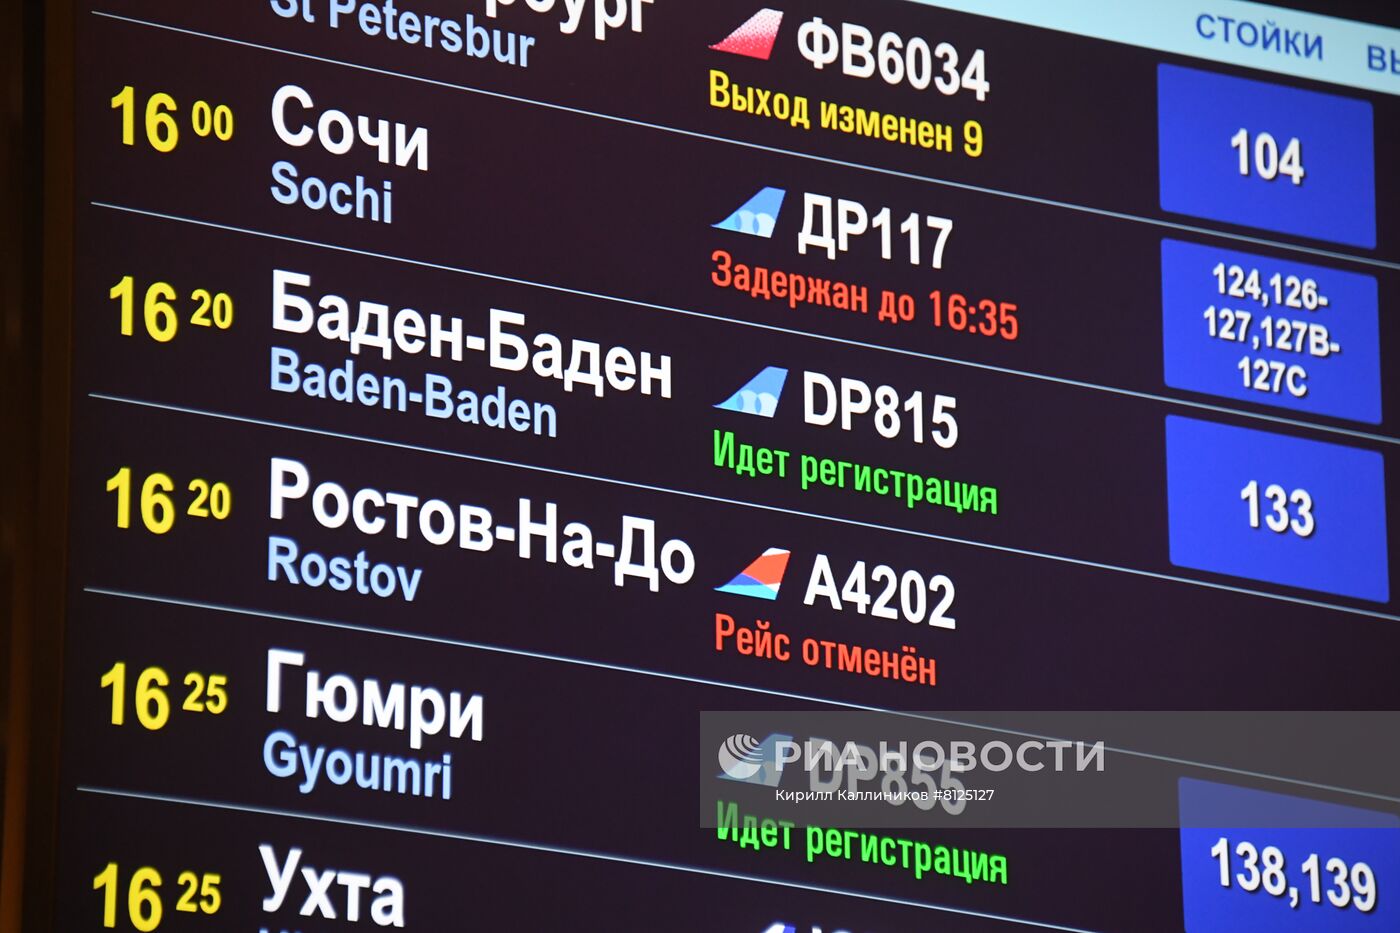 Ситуация в московских аэропортах